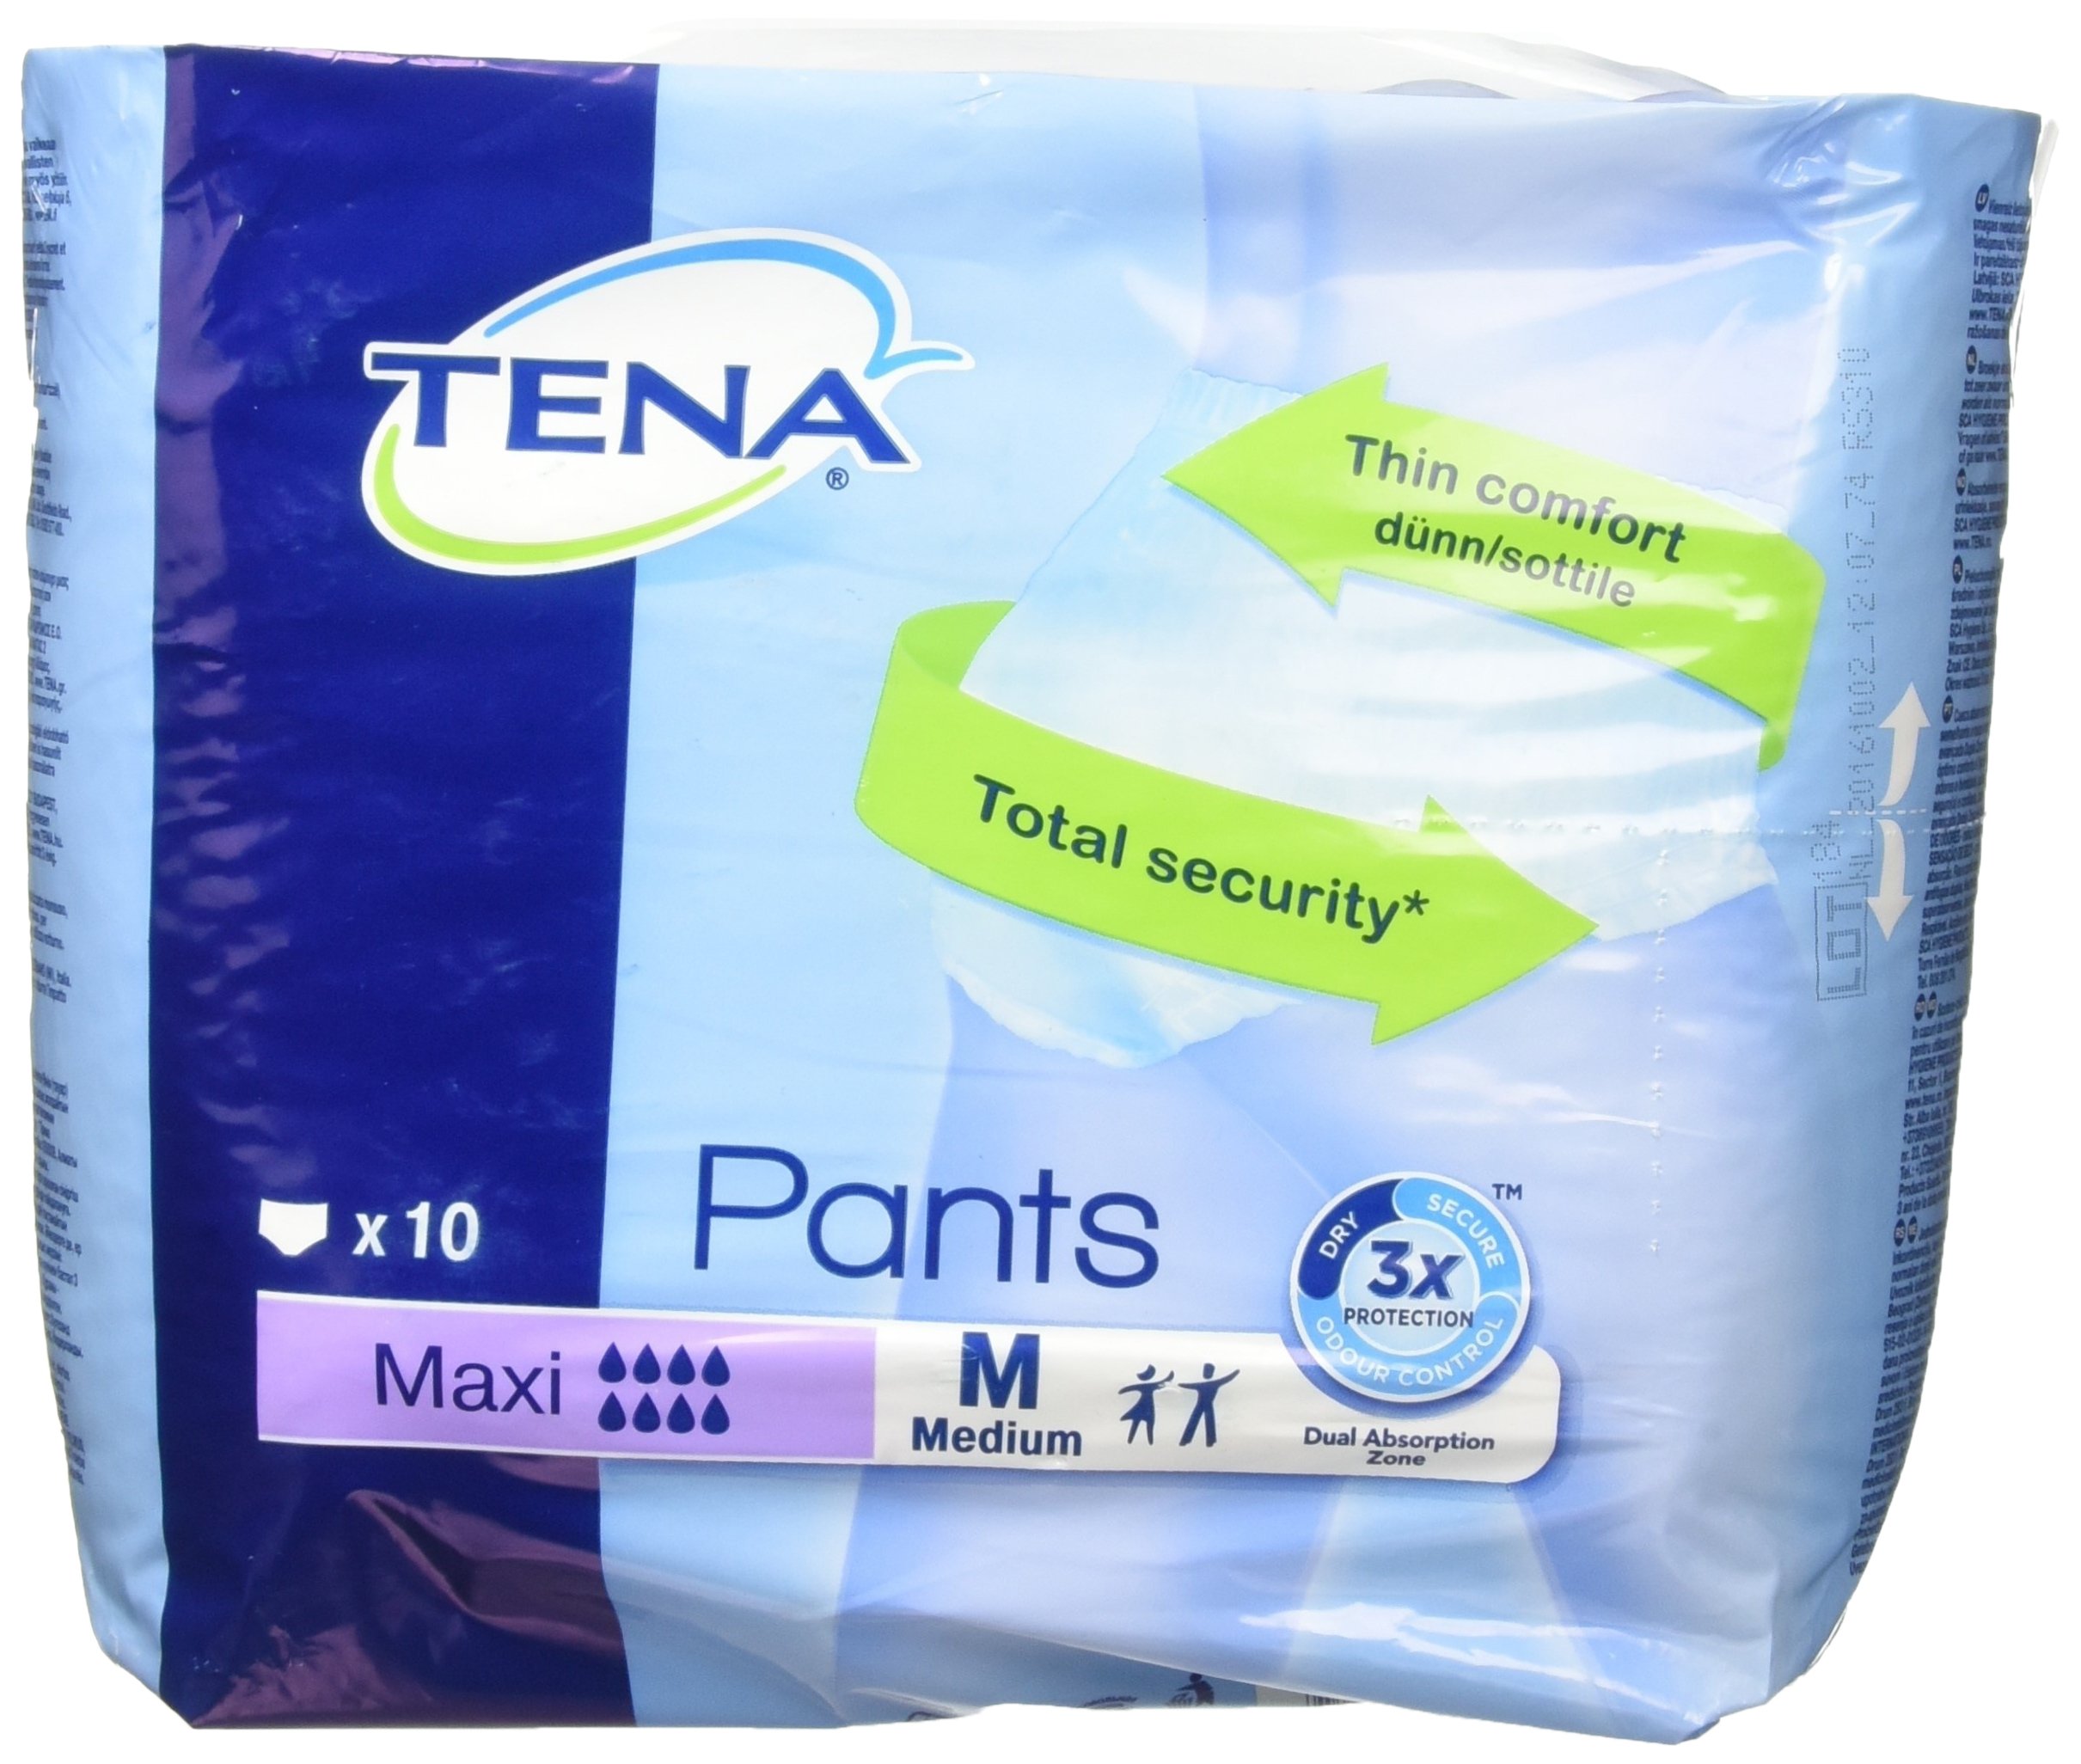 NRS Tena Pants Maxi Medium mit dünner Passform - Pack 10 (Anspruch auf Mehrwertsteuererleichterung in Großbritannien)